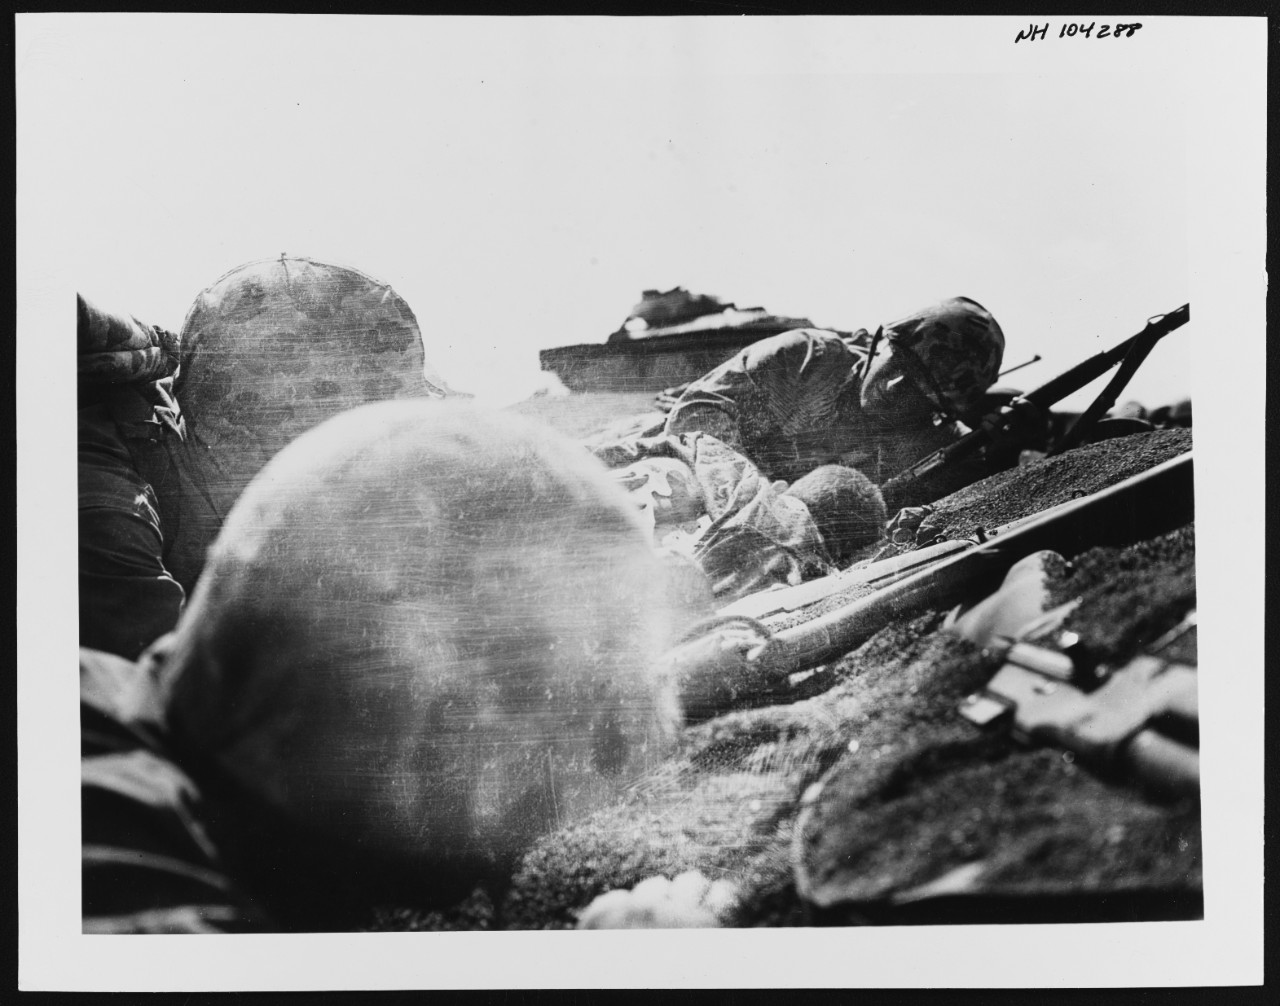 NH 104288 Iwo Jima Operation, 1945